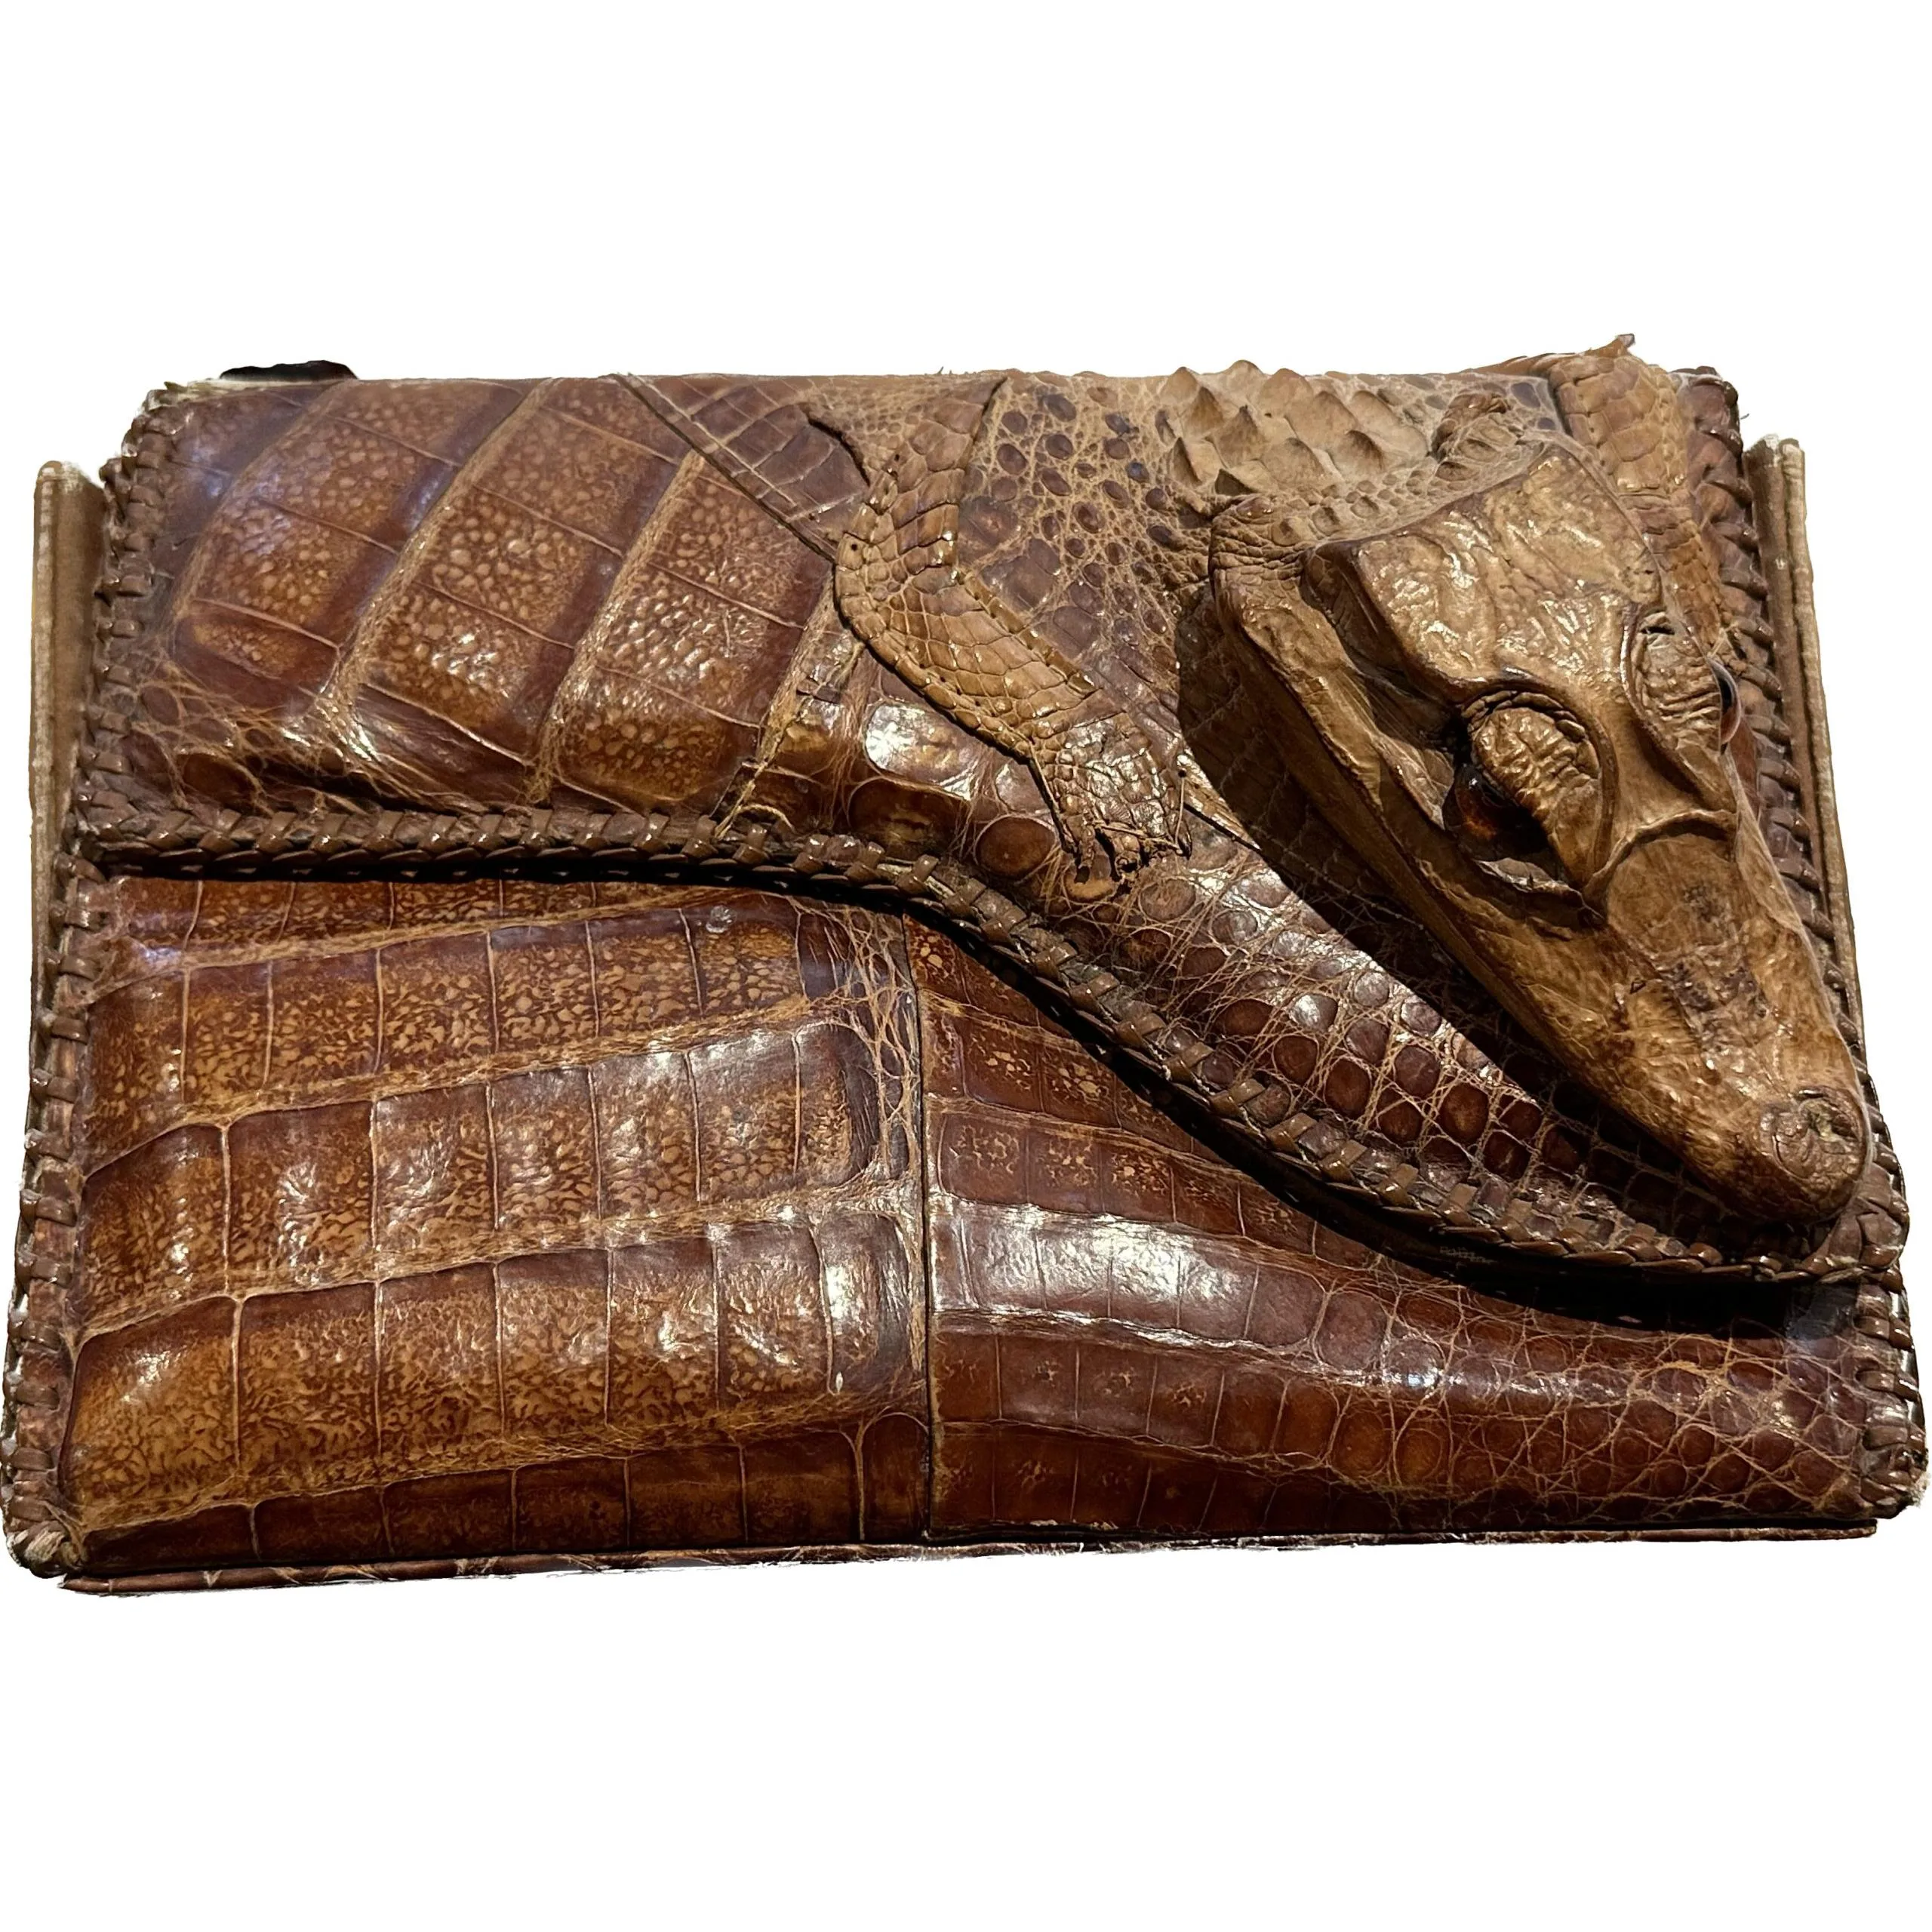 Real Alligator Bag, Vintage 60's-70's » Prehistoric Online